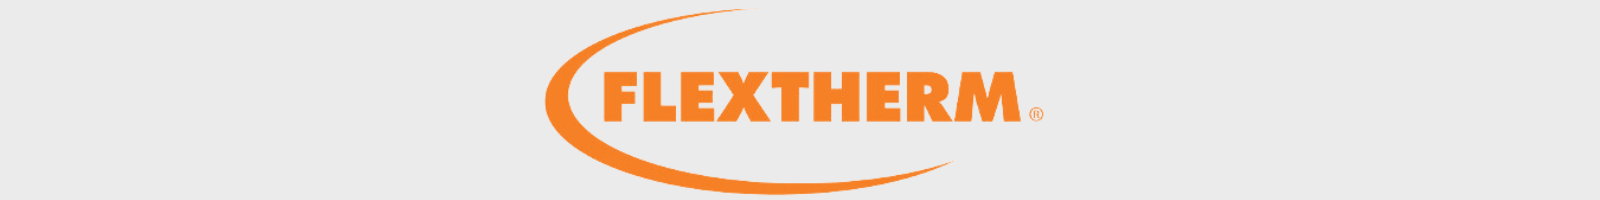 logo flextherm